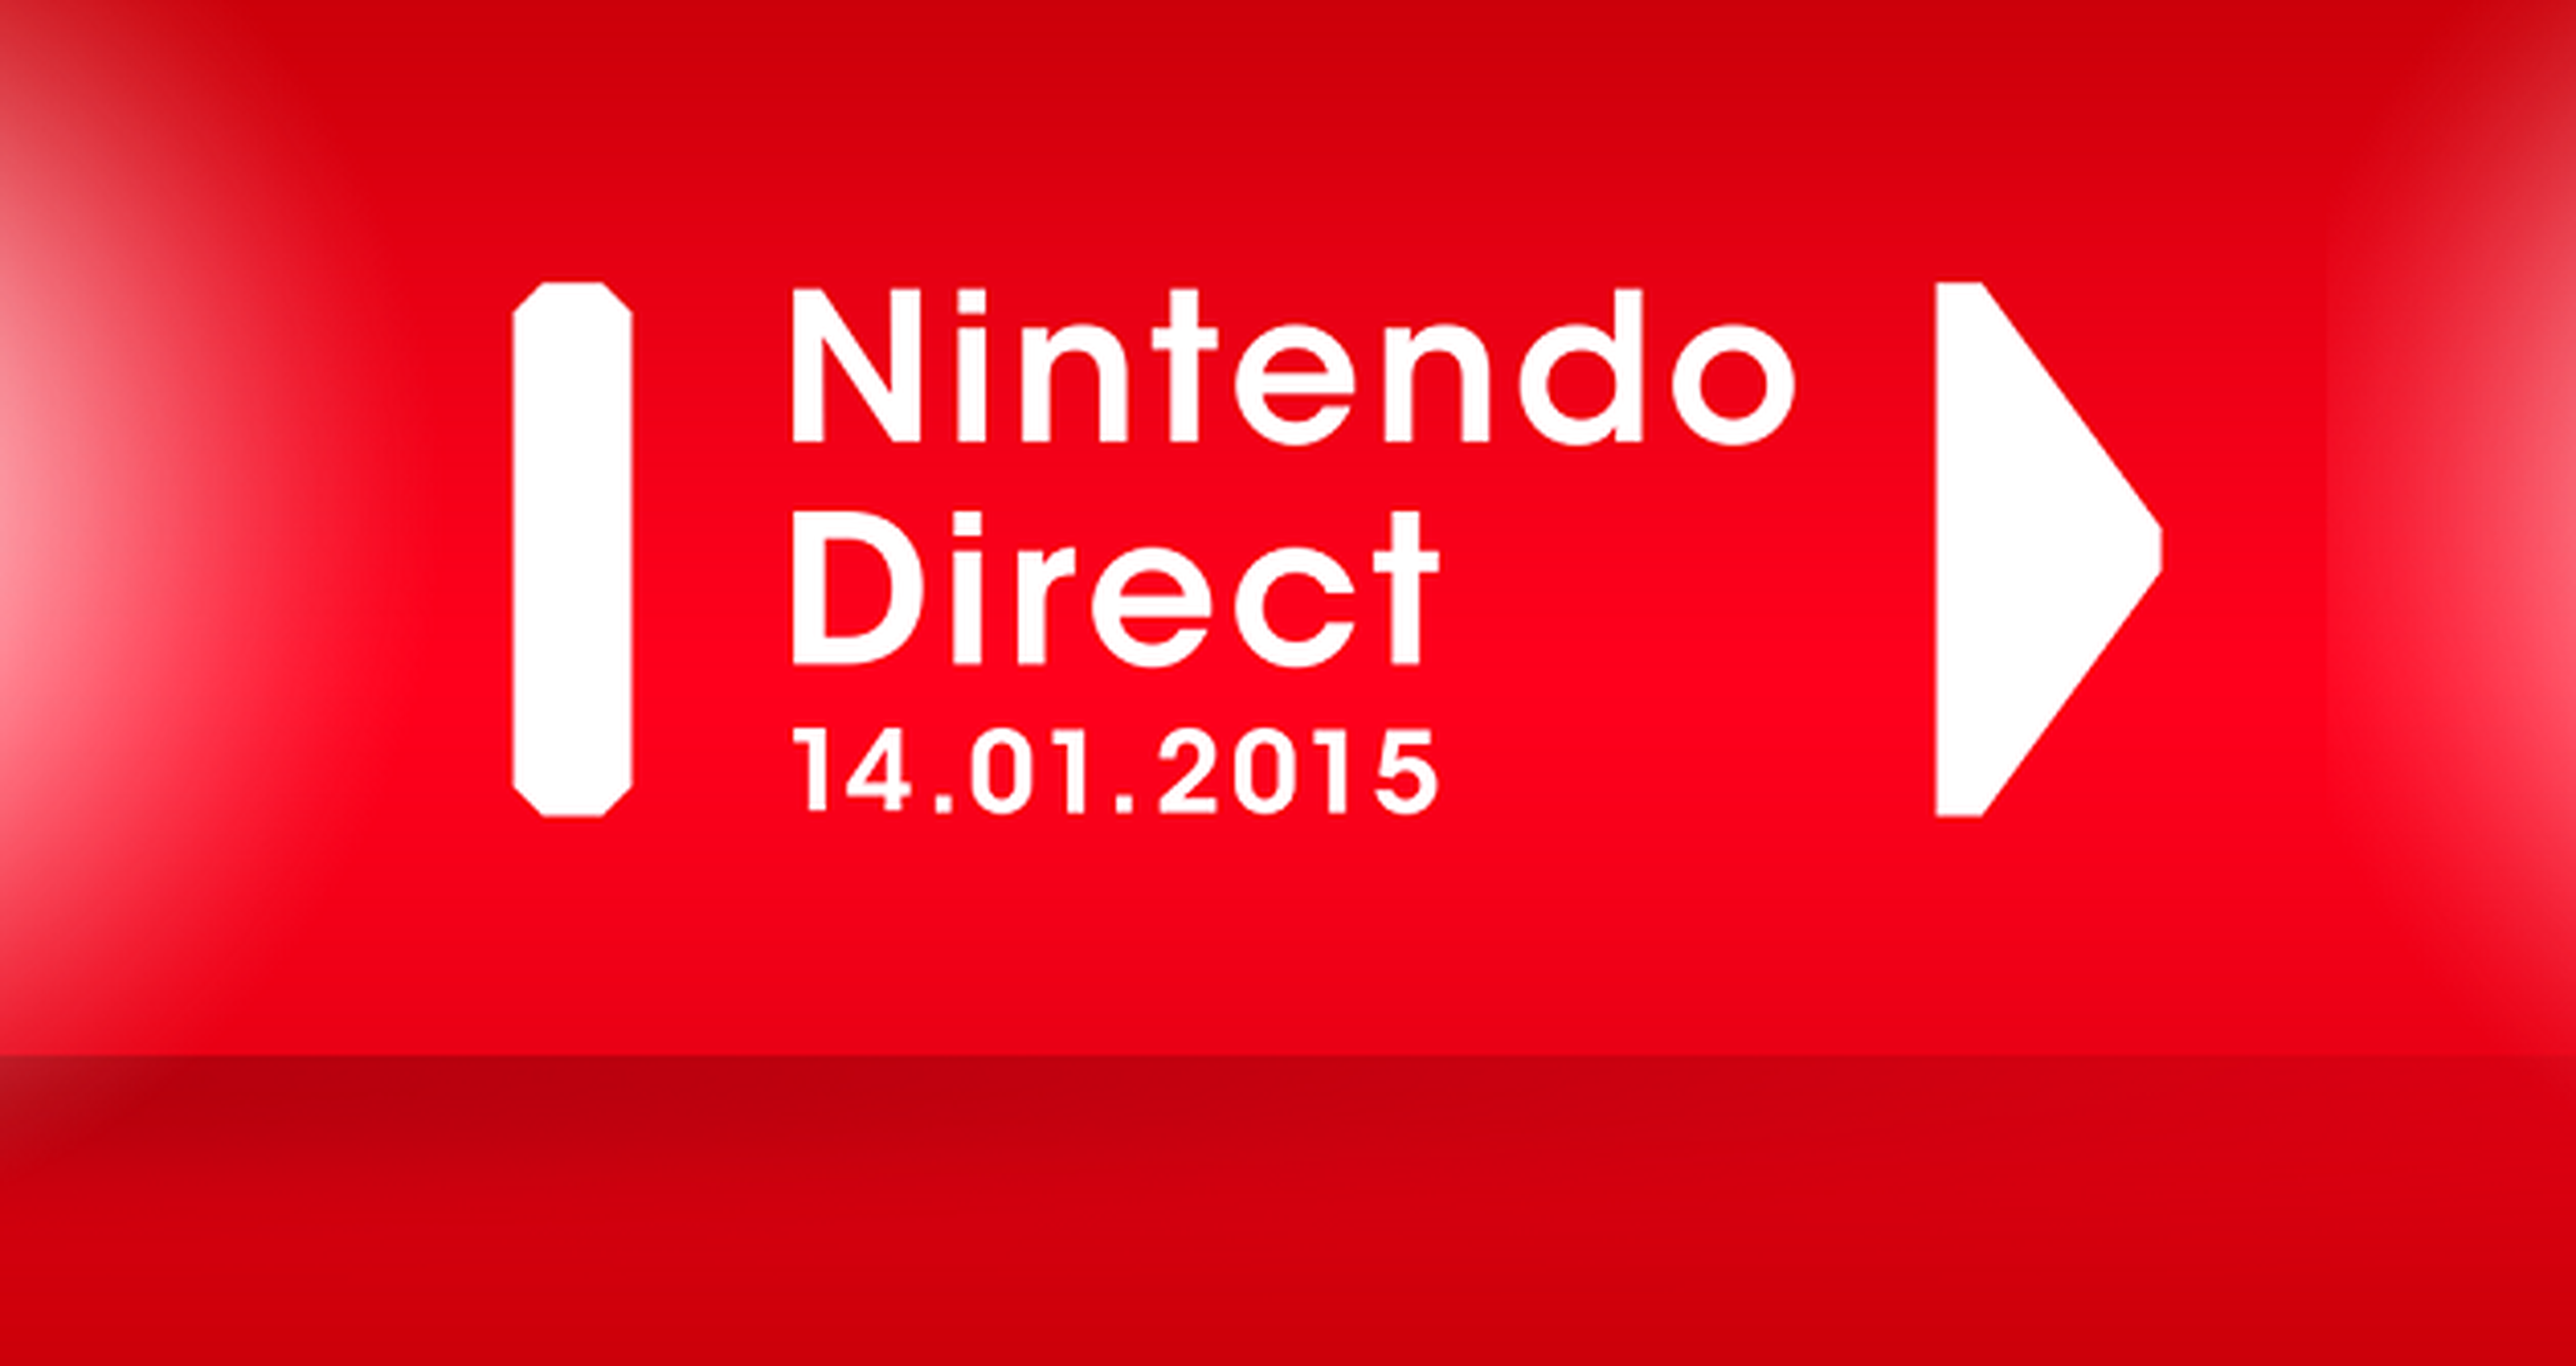 Nintendo Direct del 14 de enero de 2015. Vídeo y resumen de las novedades